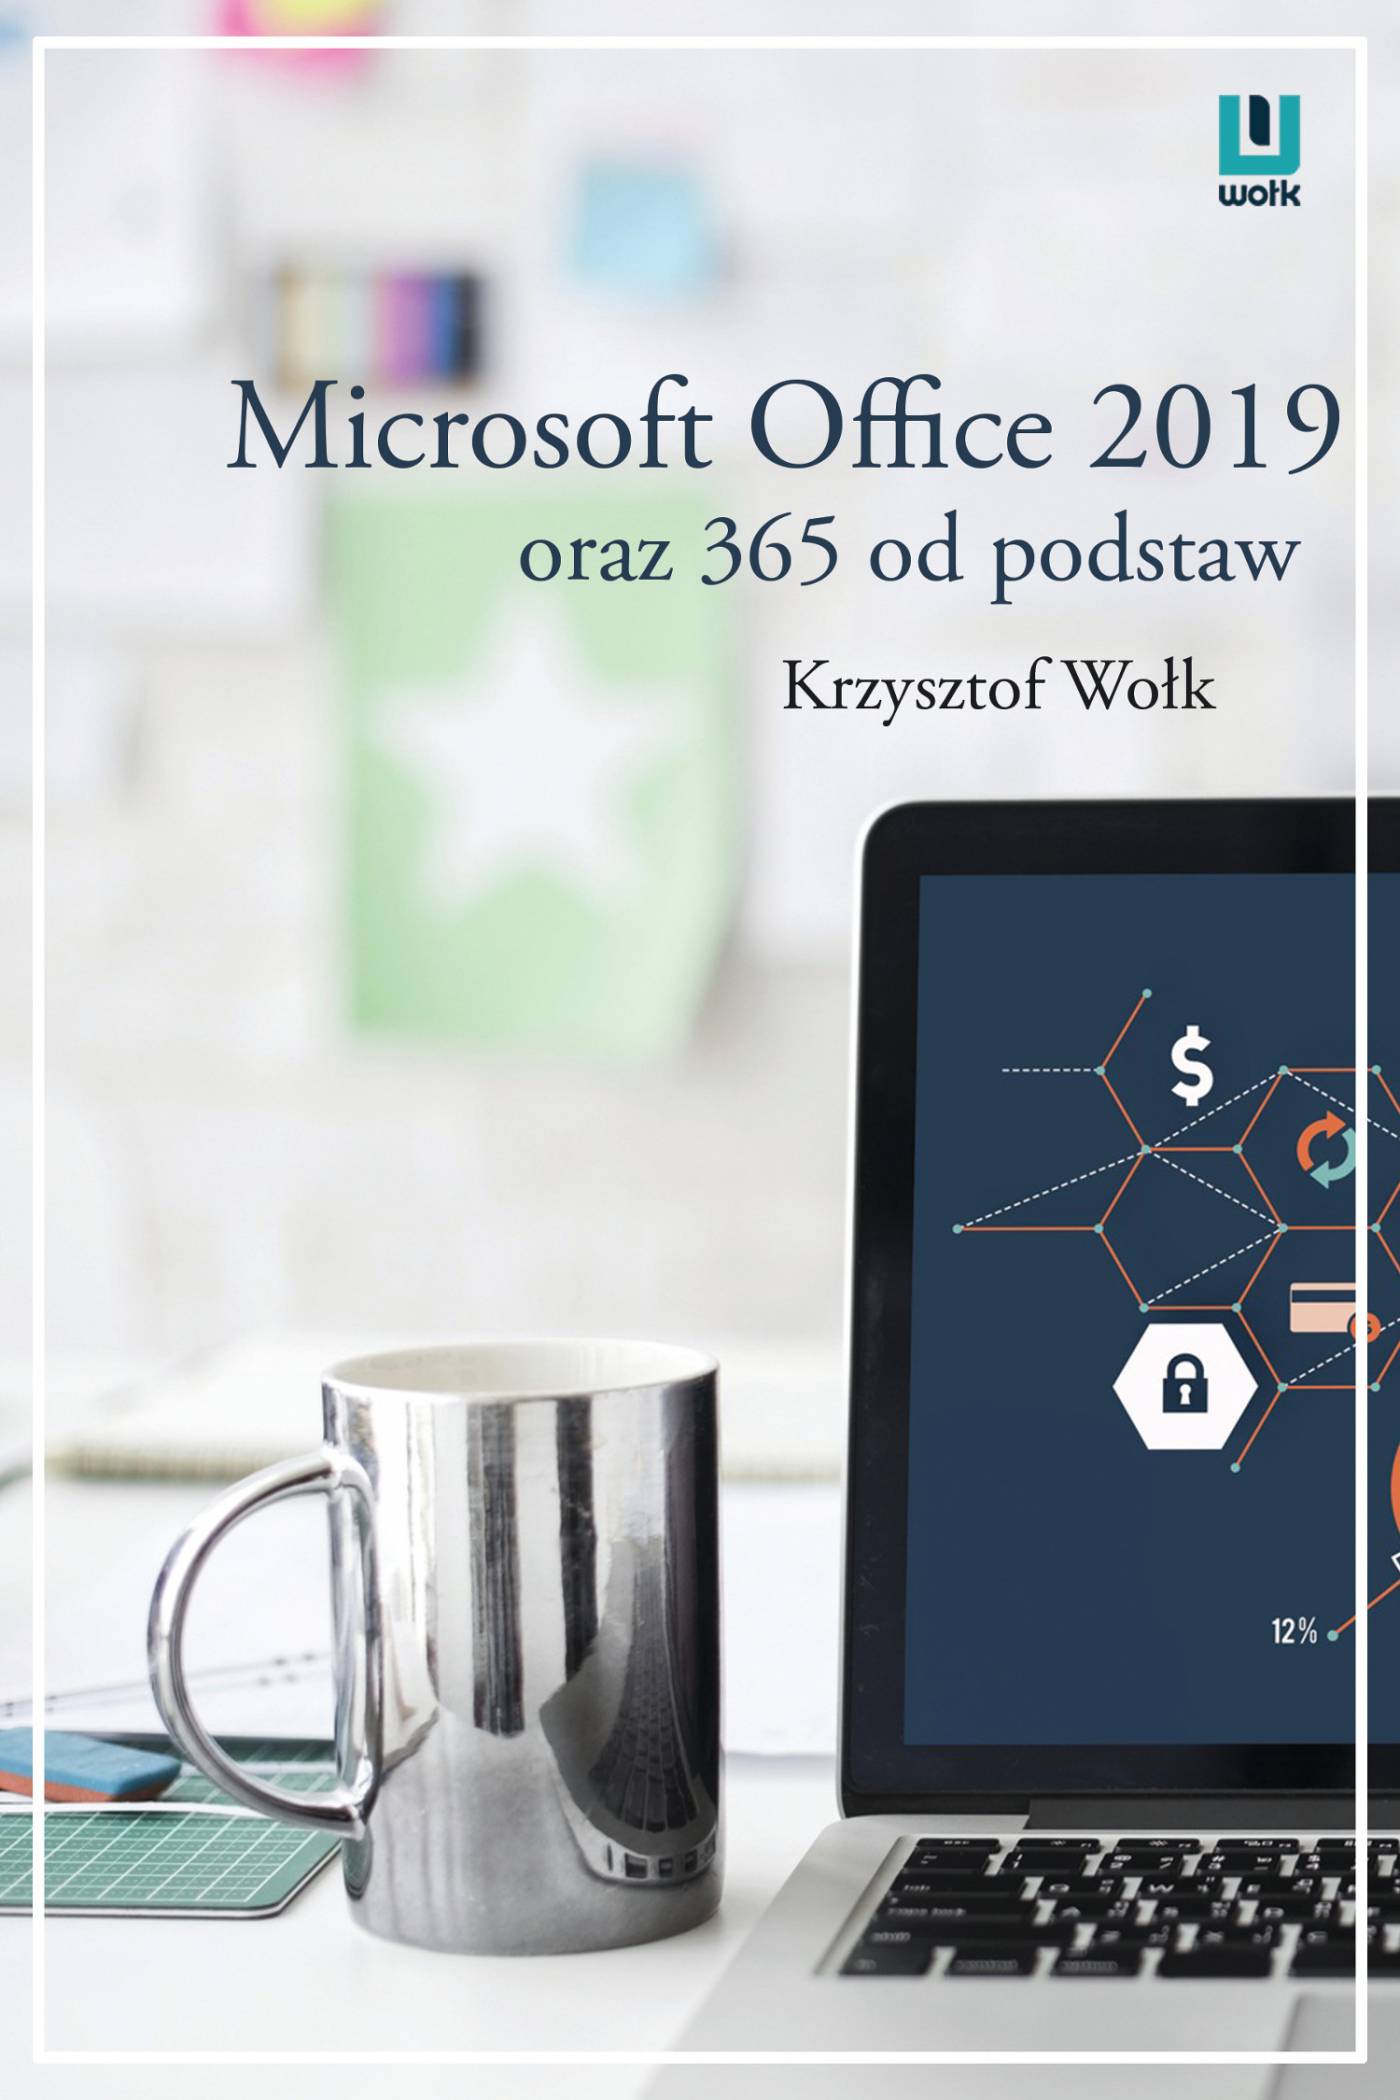 office 365 etkinlestirme kodu 2019